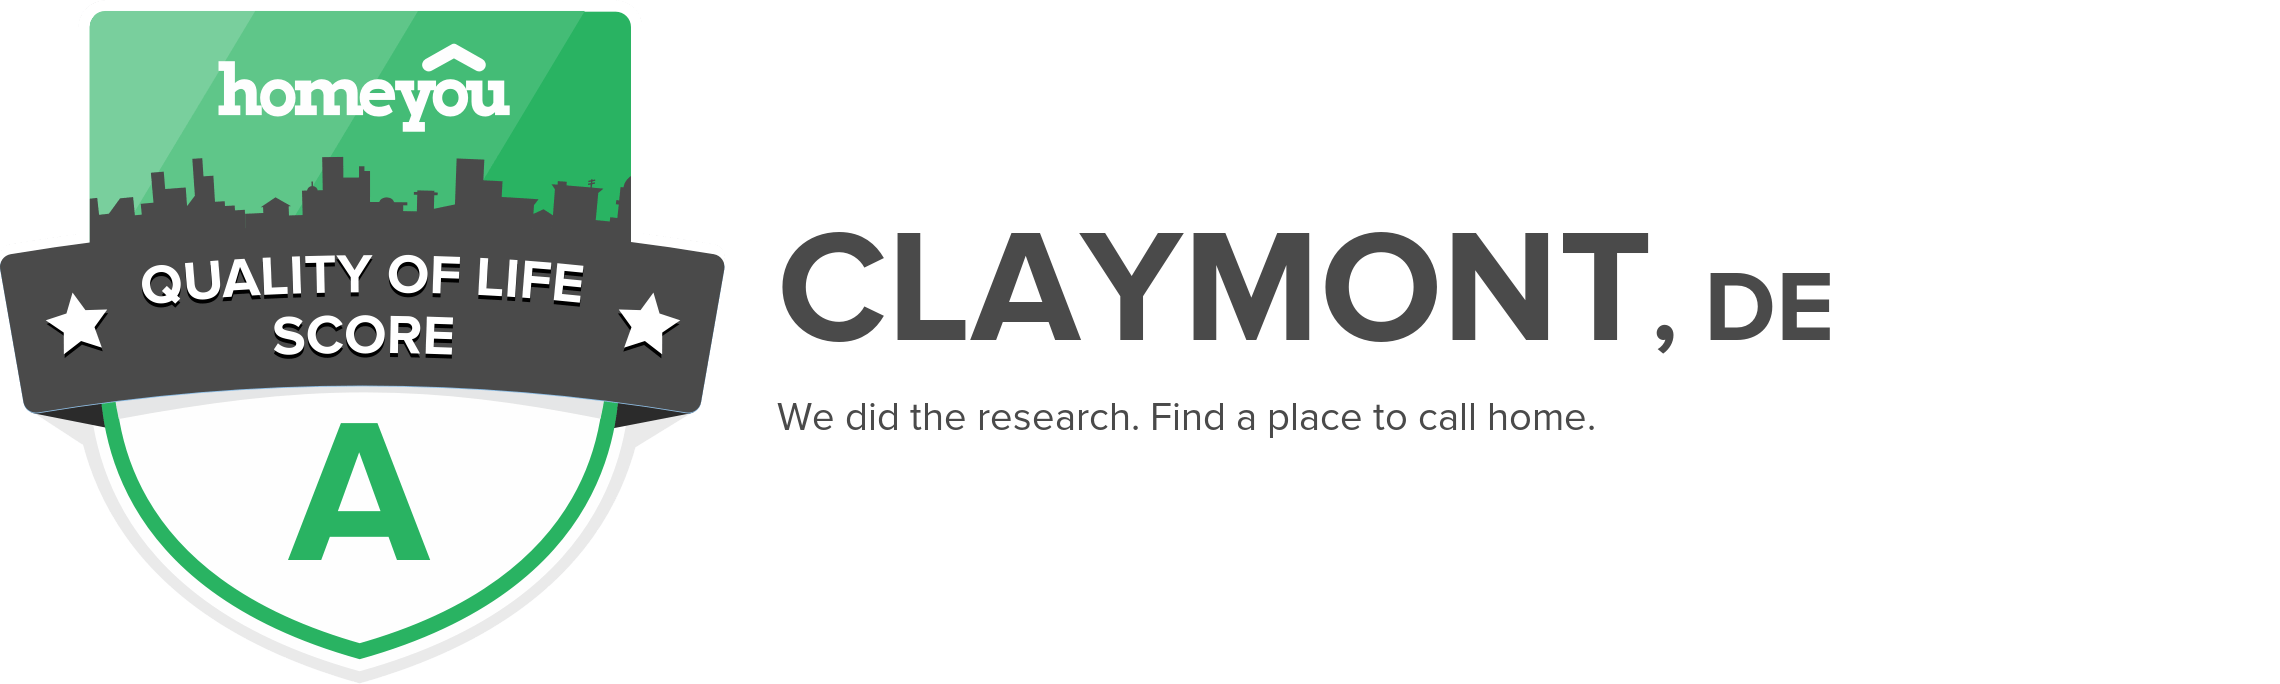 Claymont, DE